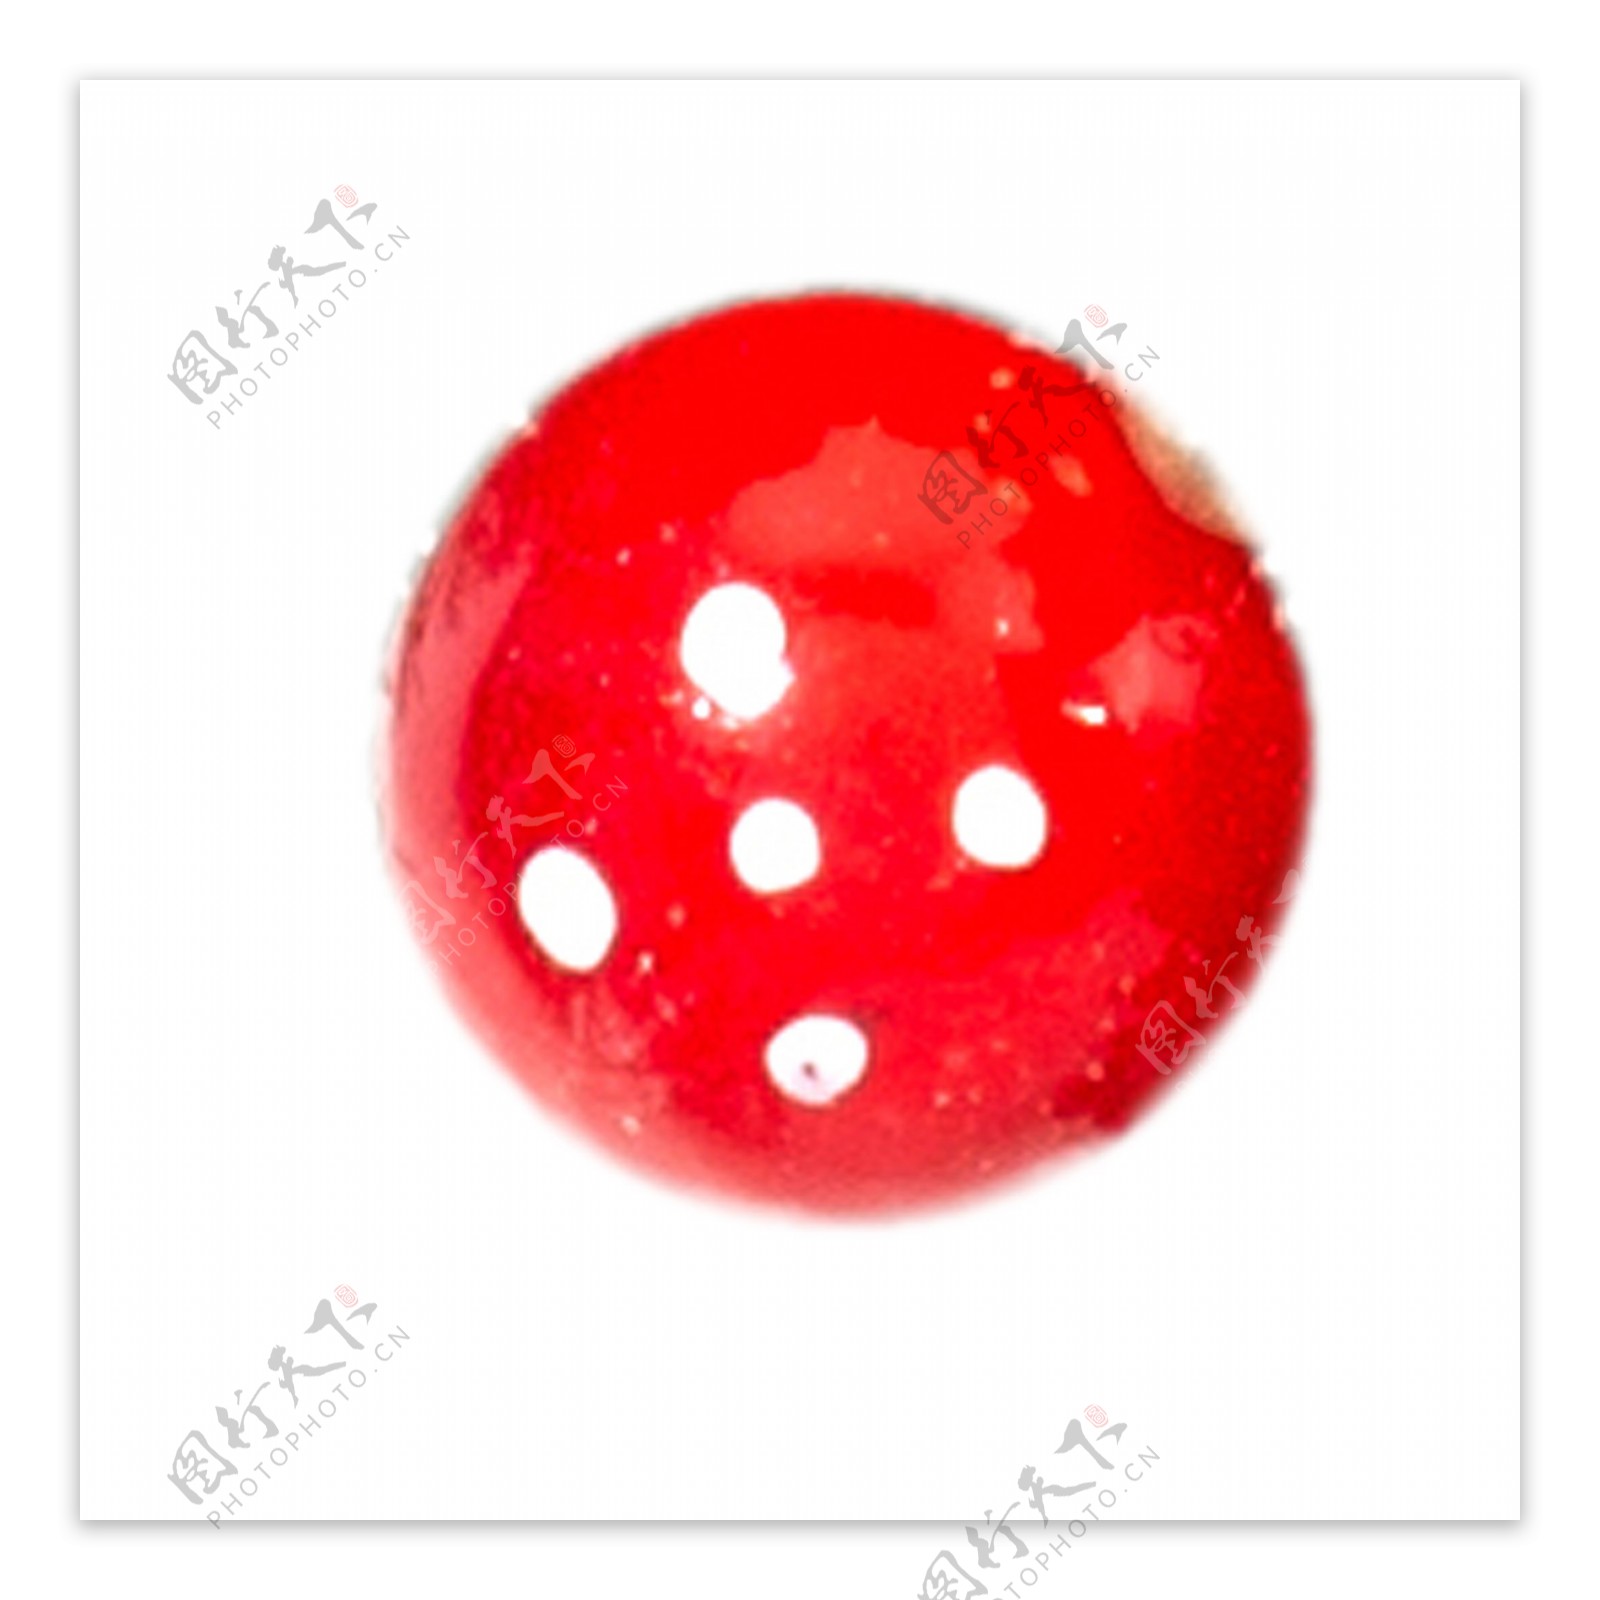 红色圆形球体下载